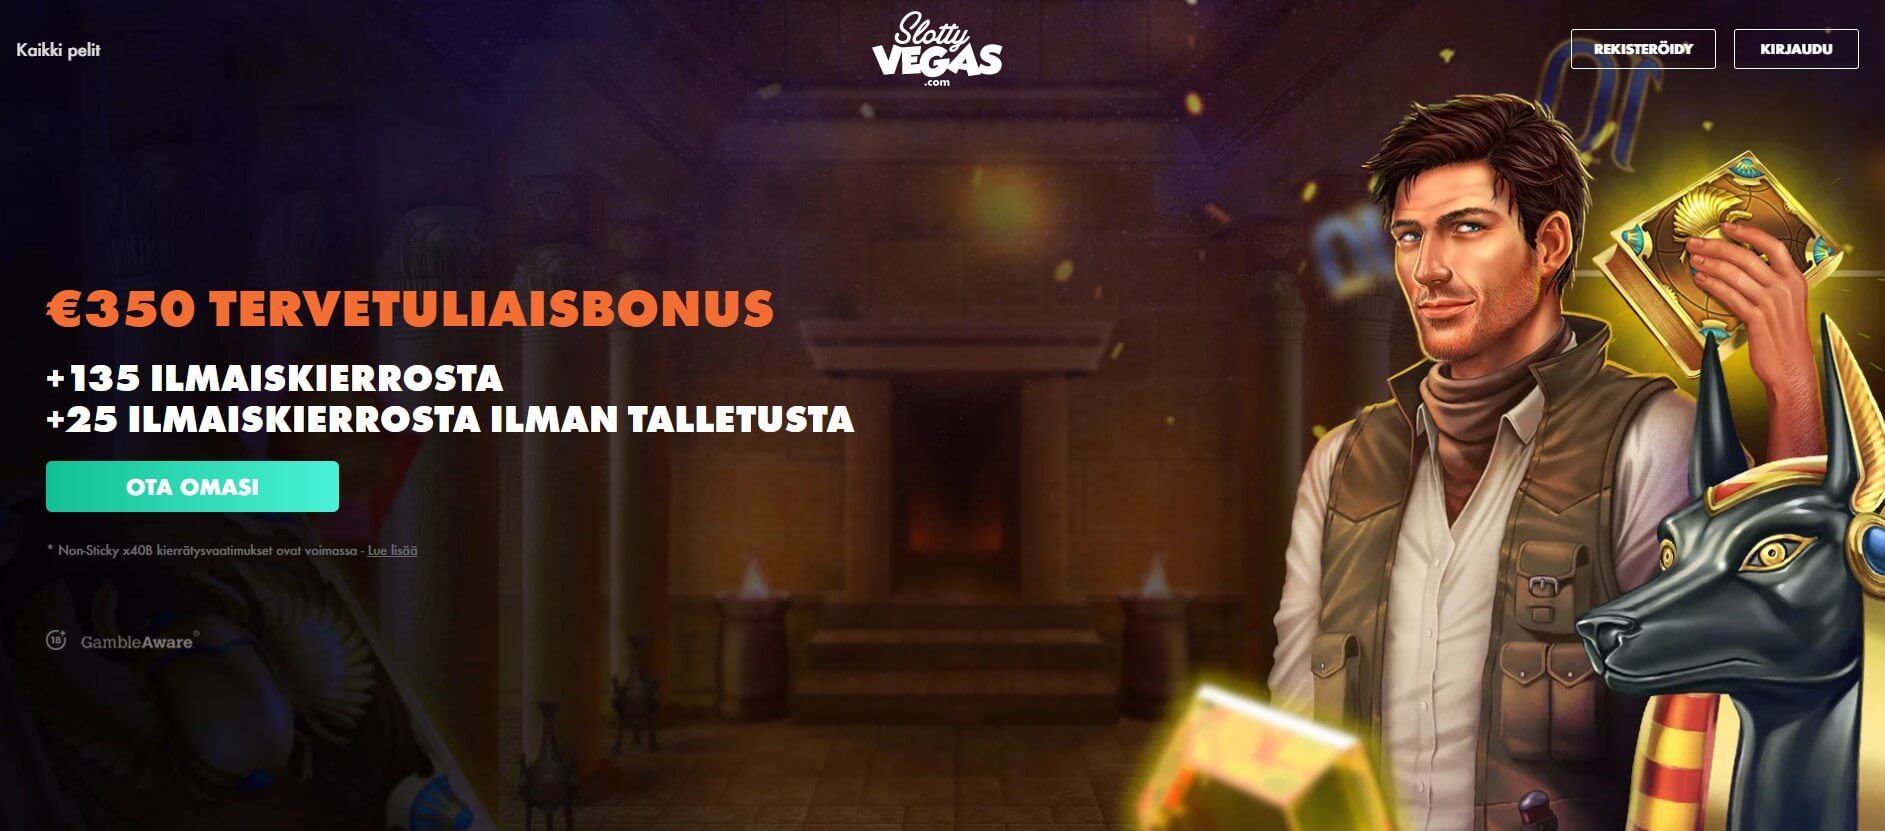 SlottyVegas Casino bonus